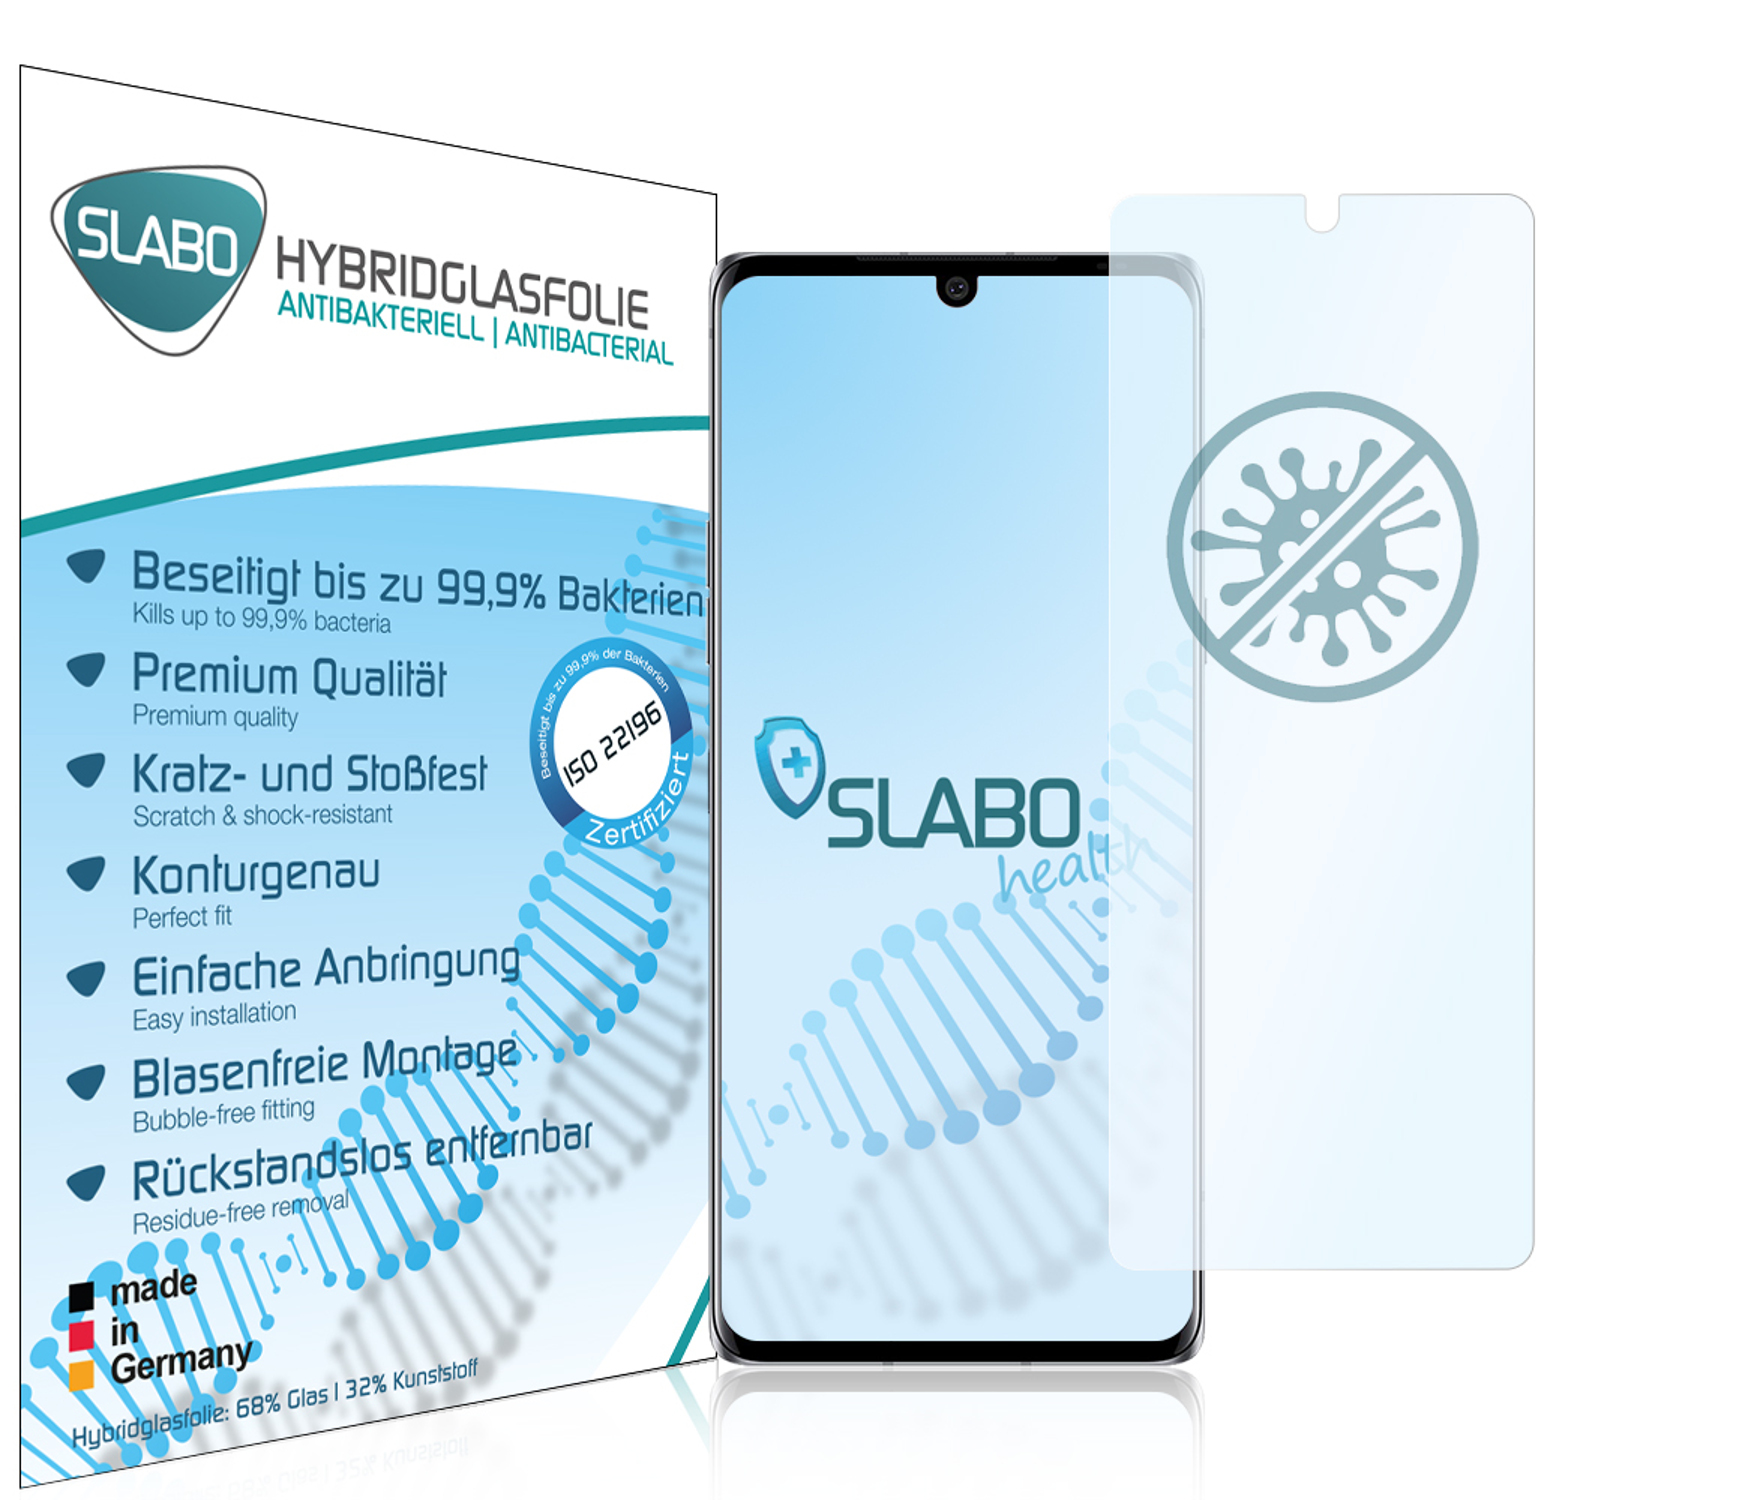 SLABO antibakterielle (4G 5G)) Velvet | LG Displayschutz(für Hybridglasfolie flexible